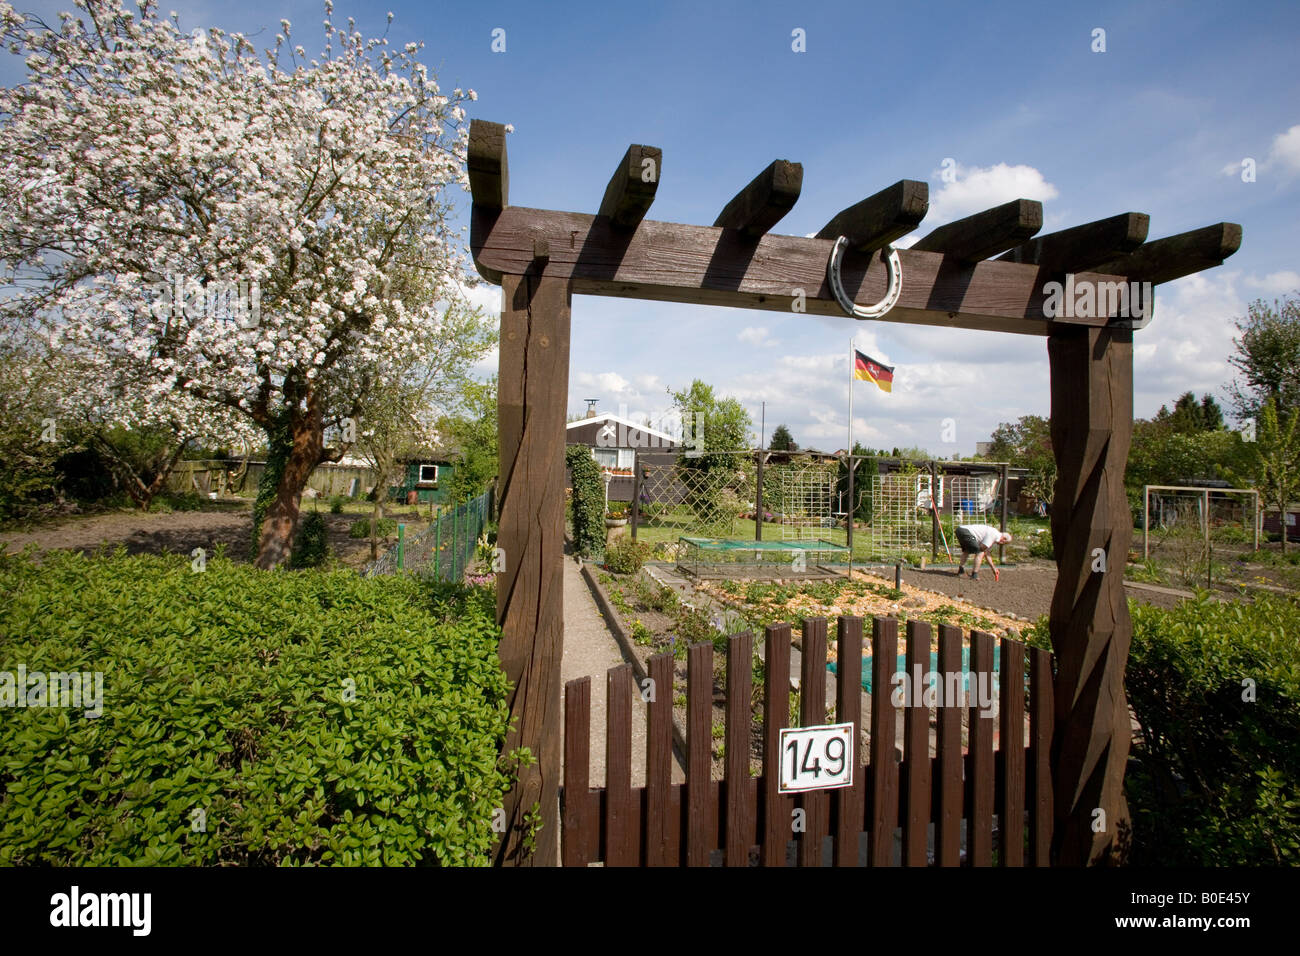 Allotissement allemand typique jardin au printemps Banque D'Images